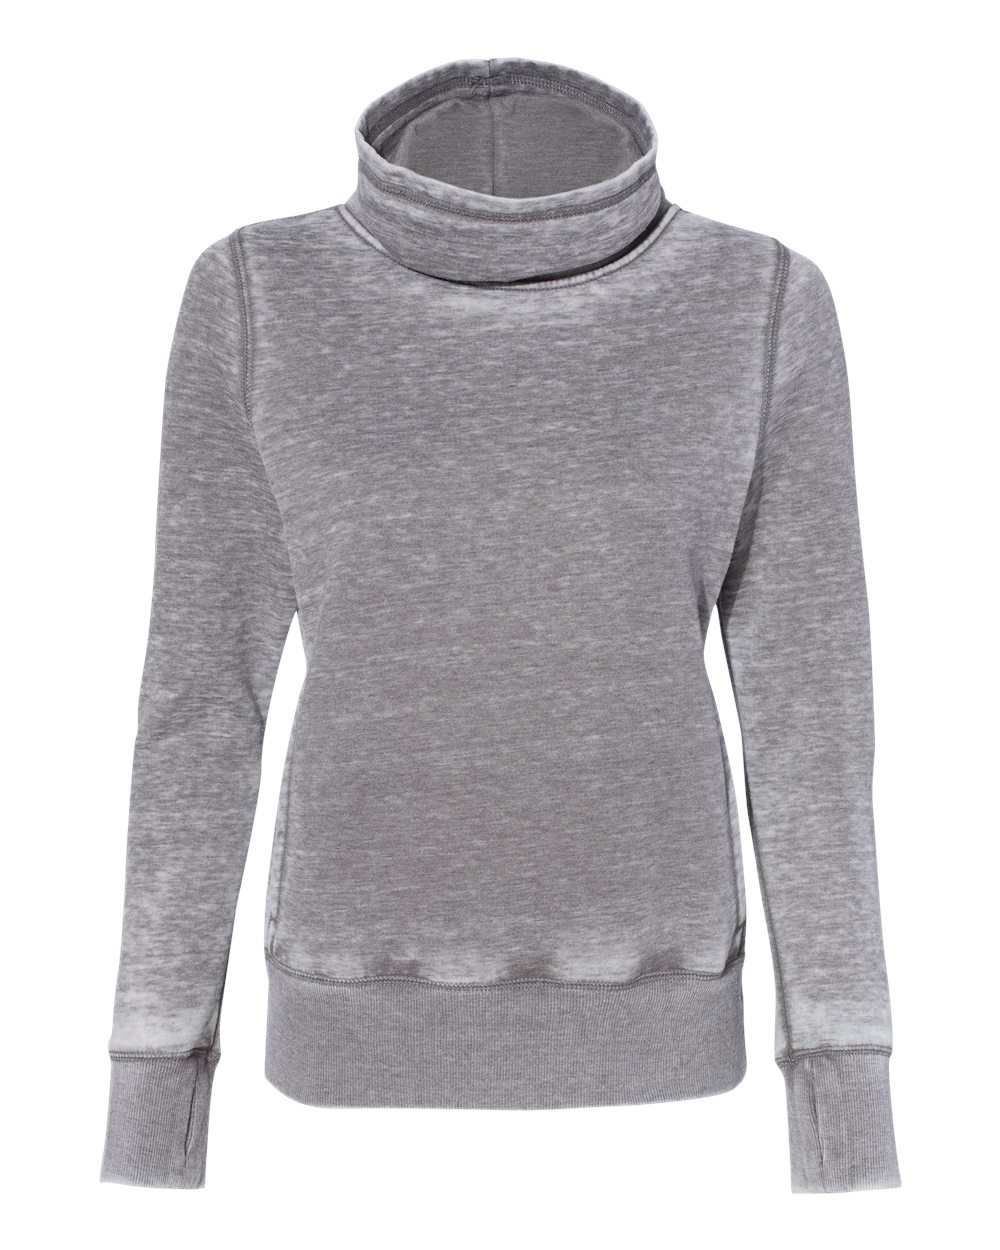 J. America 8930 - Women's Zen Fleece Cowl Neck Sweatshirt